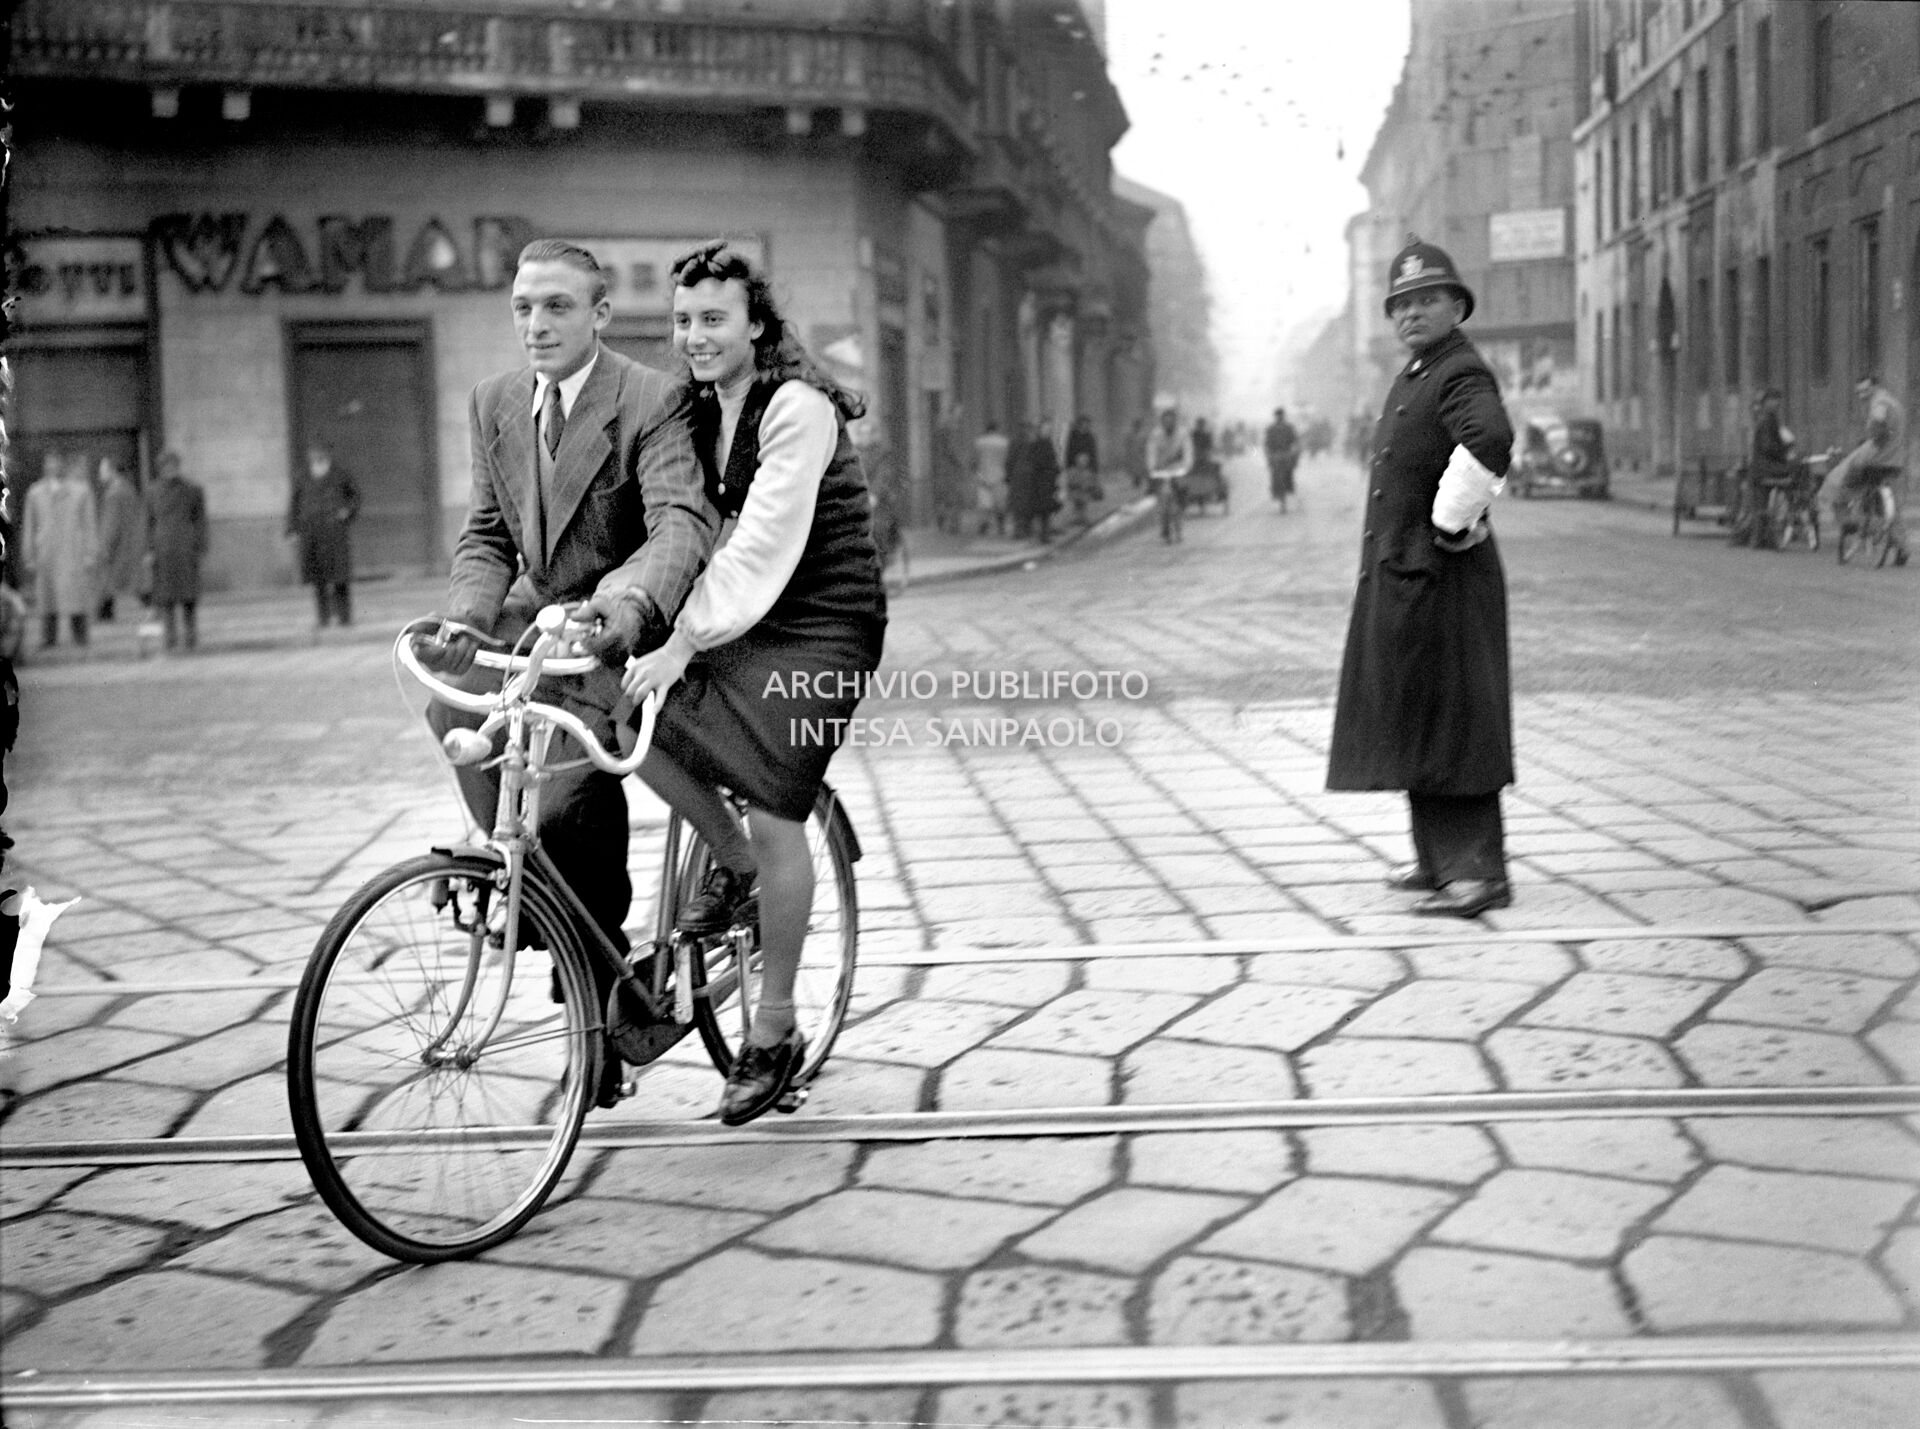 Un uomo e una donna a bordo di un particolare modello di bicicletta in una via di Milano, poco più in là un vigile urbano li guarda incuriosito